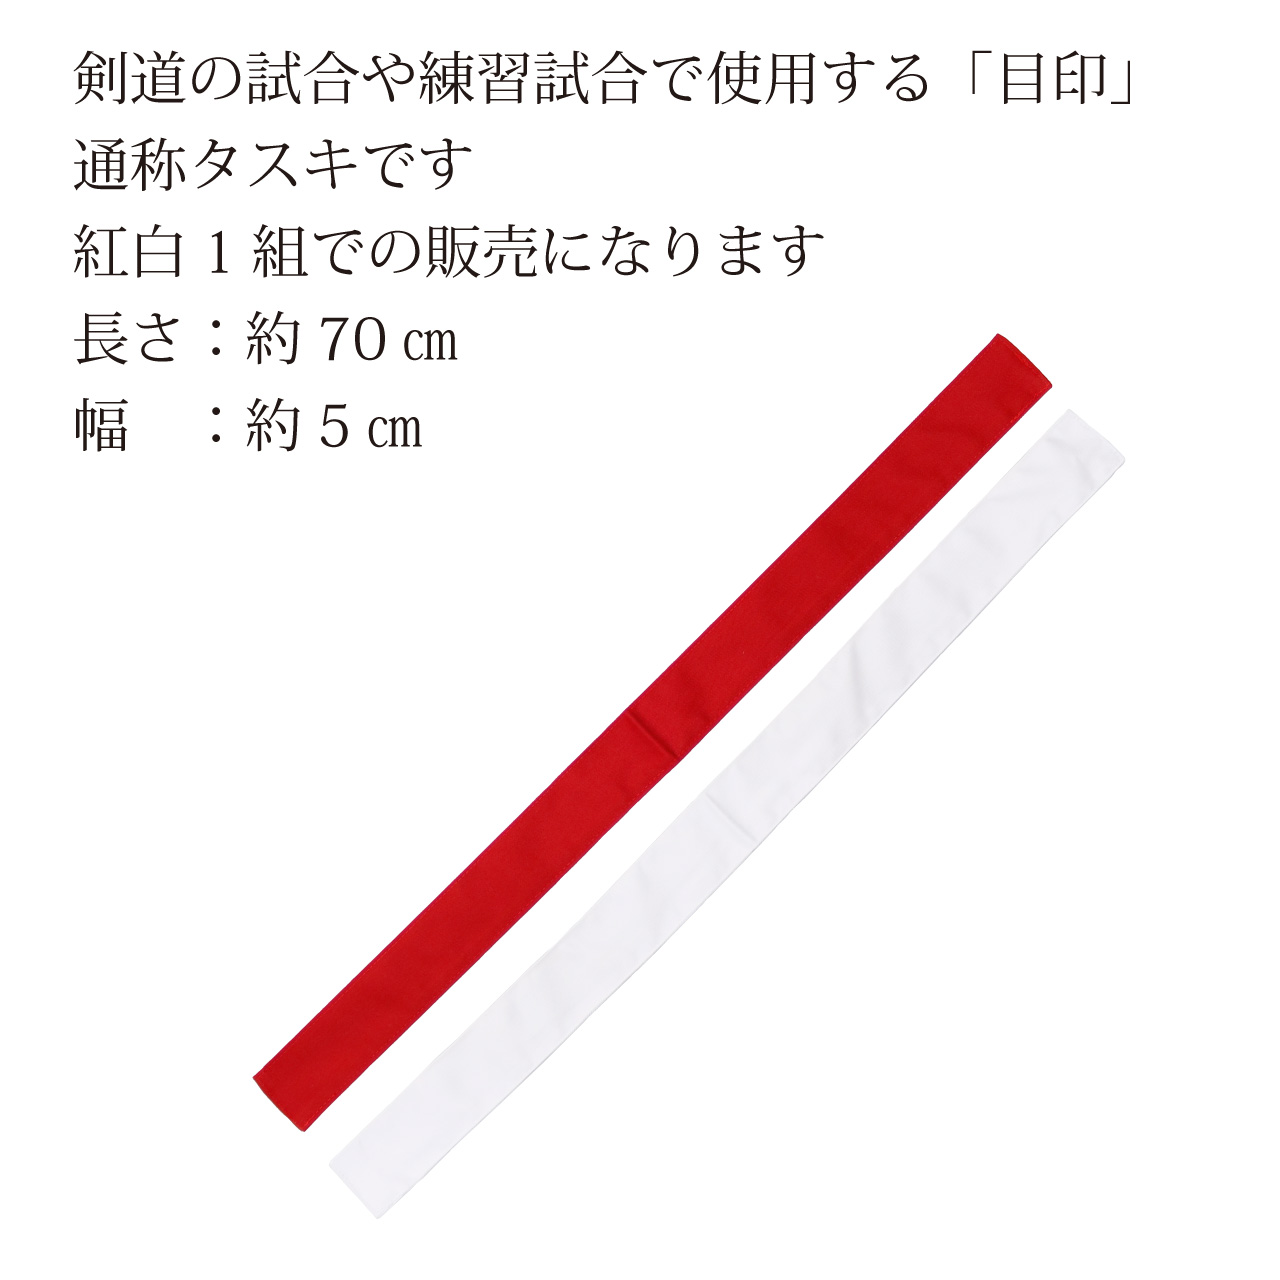 剣道の試合や練習試合で使用する【目印】通称タスキです。紅白1組での販売になります。